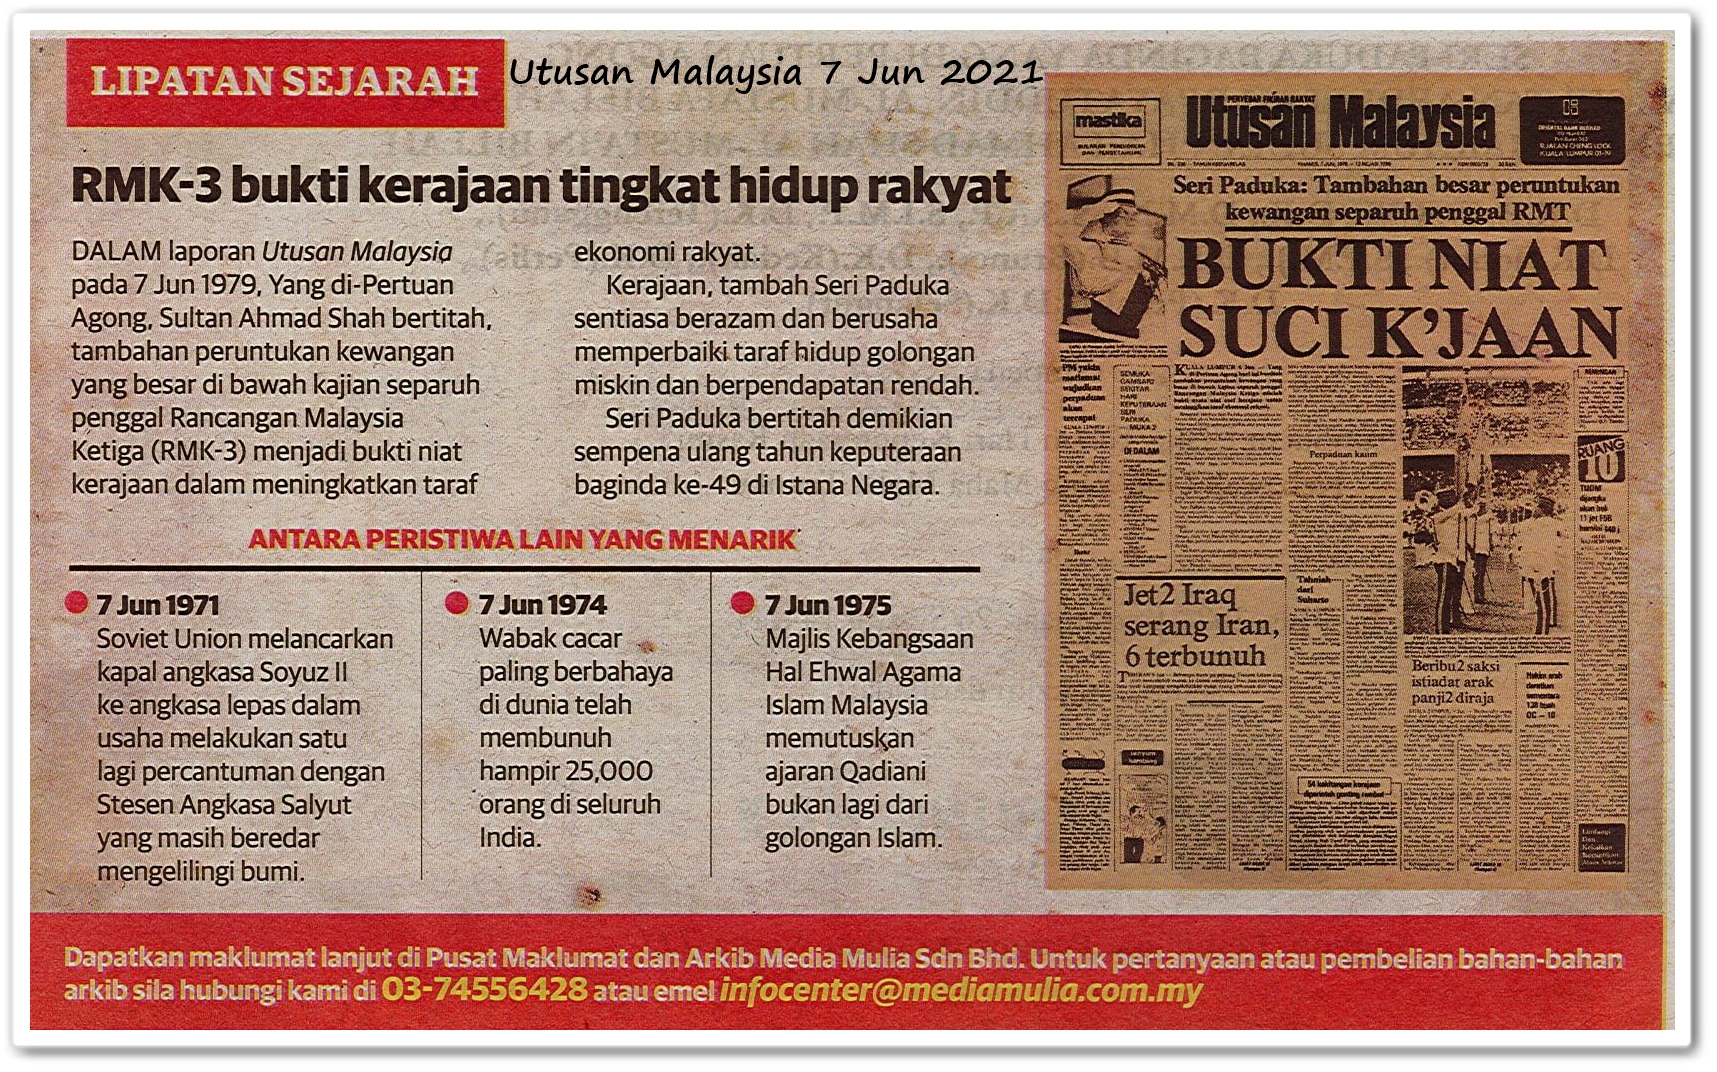 Lipatan sejarah 7 Jun - Keratan akhbar Utusan Malaysia 7 Jun 2021